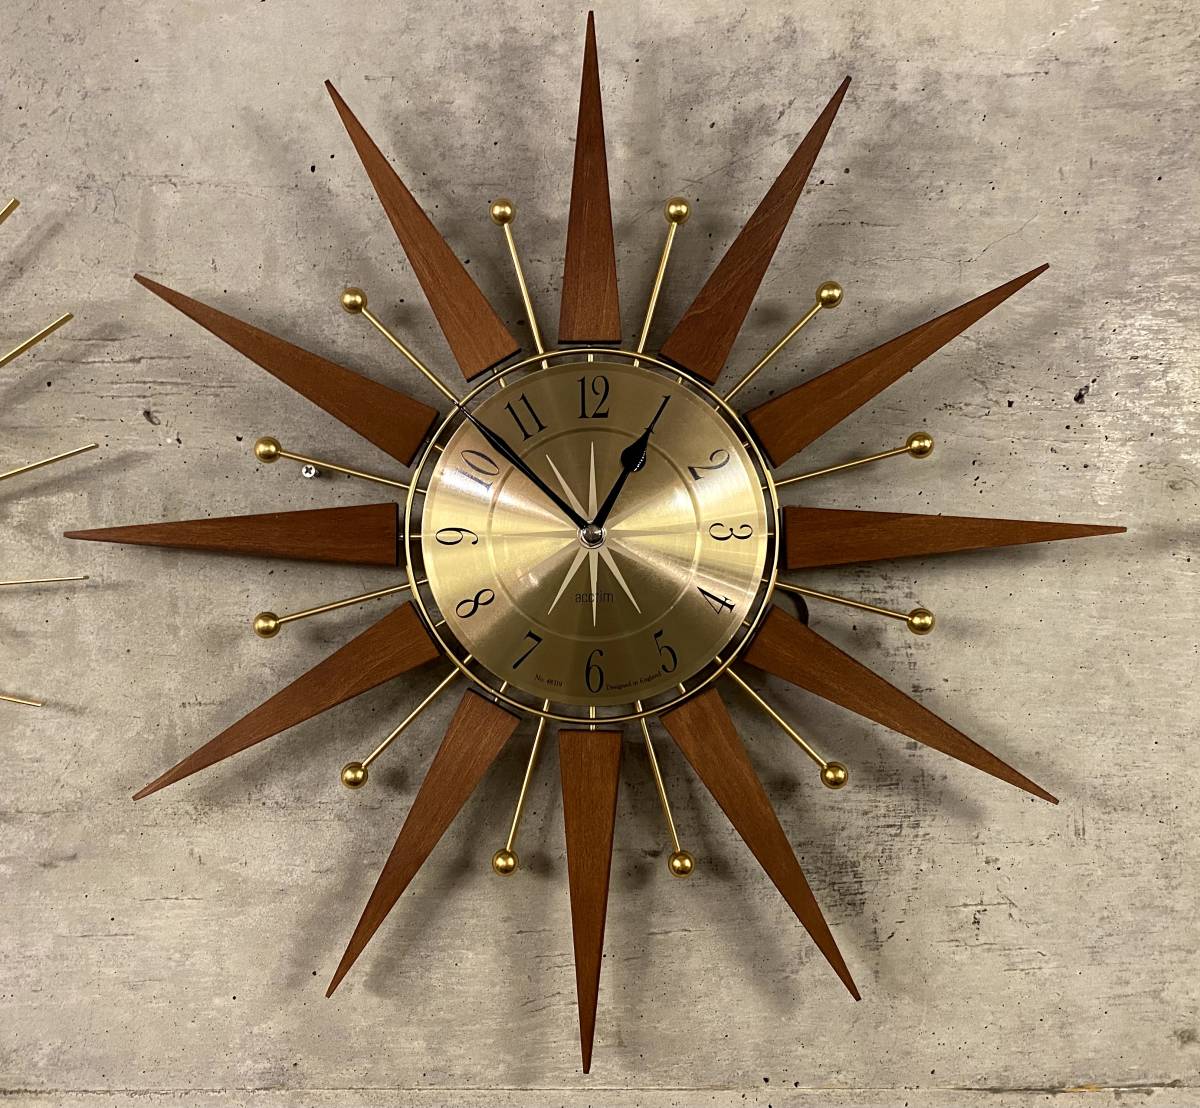 Sunburst Clock(midcentury,サンバースト,スターバースト,ビンテージクロック,ミッドセンチュリー,イームズ,50's,スペースエイジ_画像5